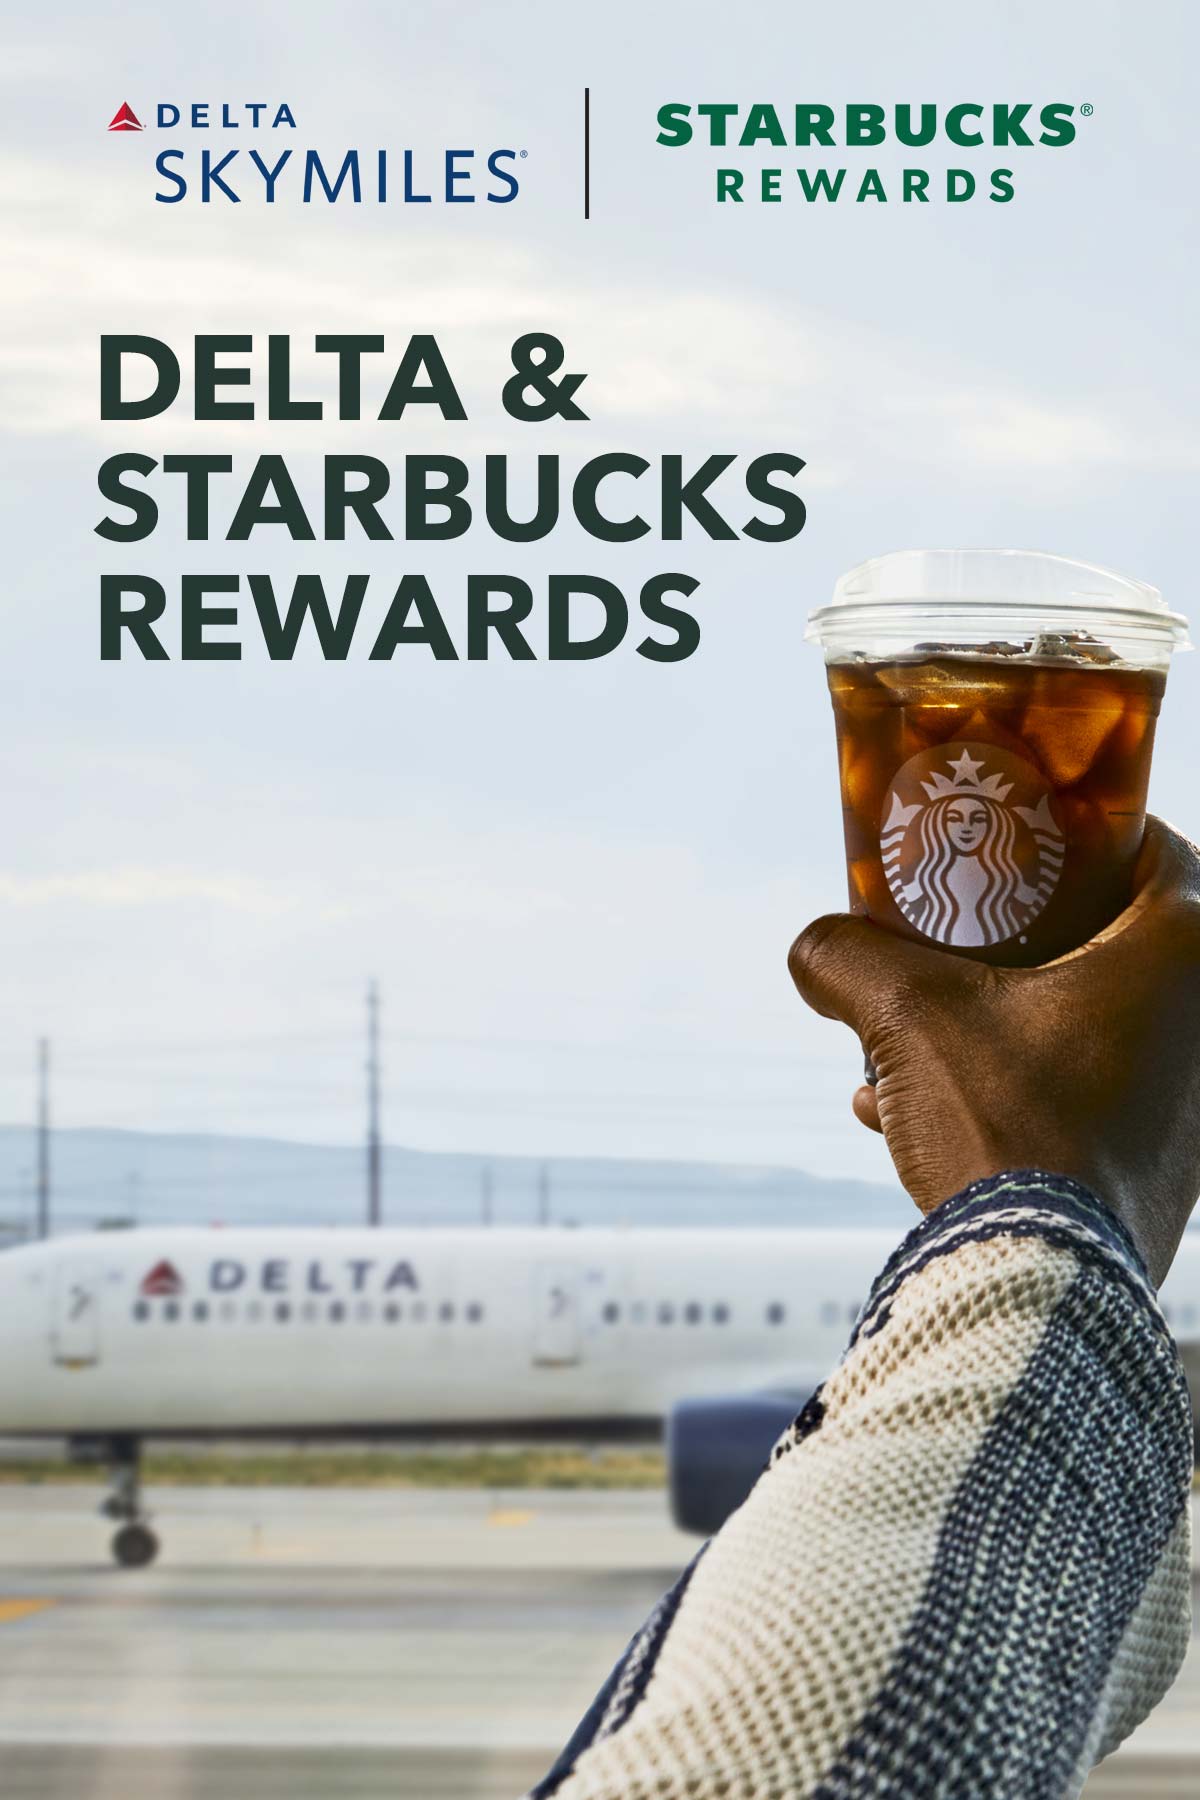 Delta en Starbucks Rewards tekst op foto van hand met Starbucks ijskoffie voor een Delta-vliegtuig.